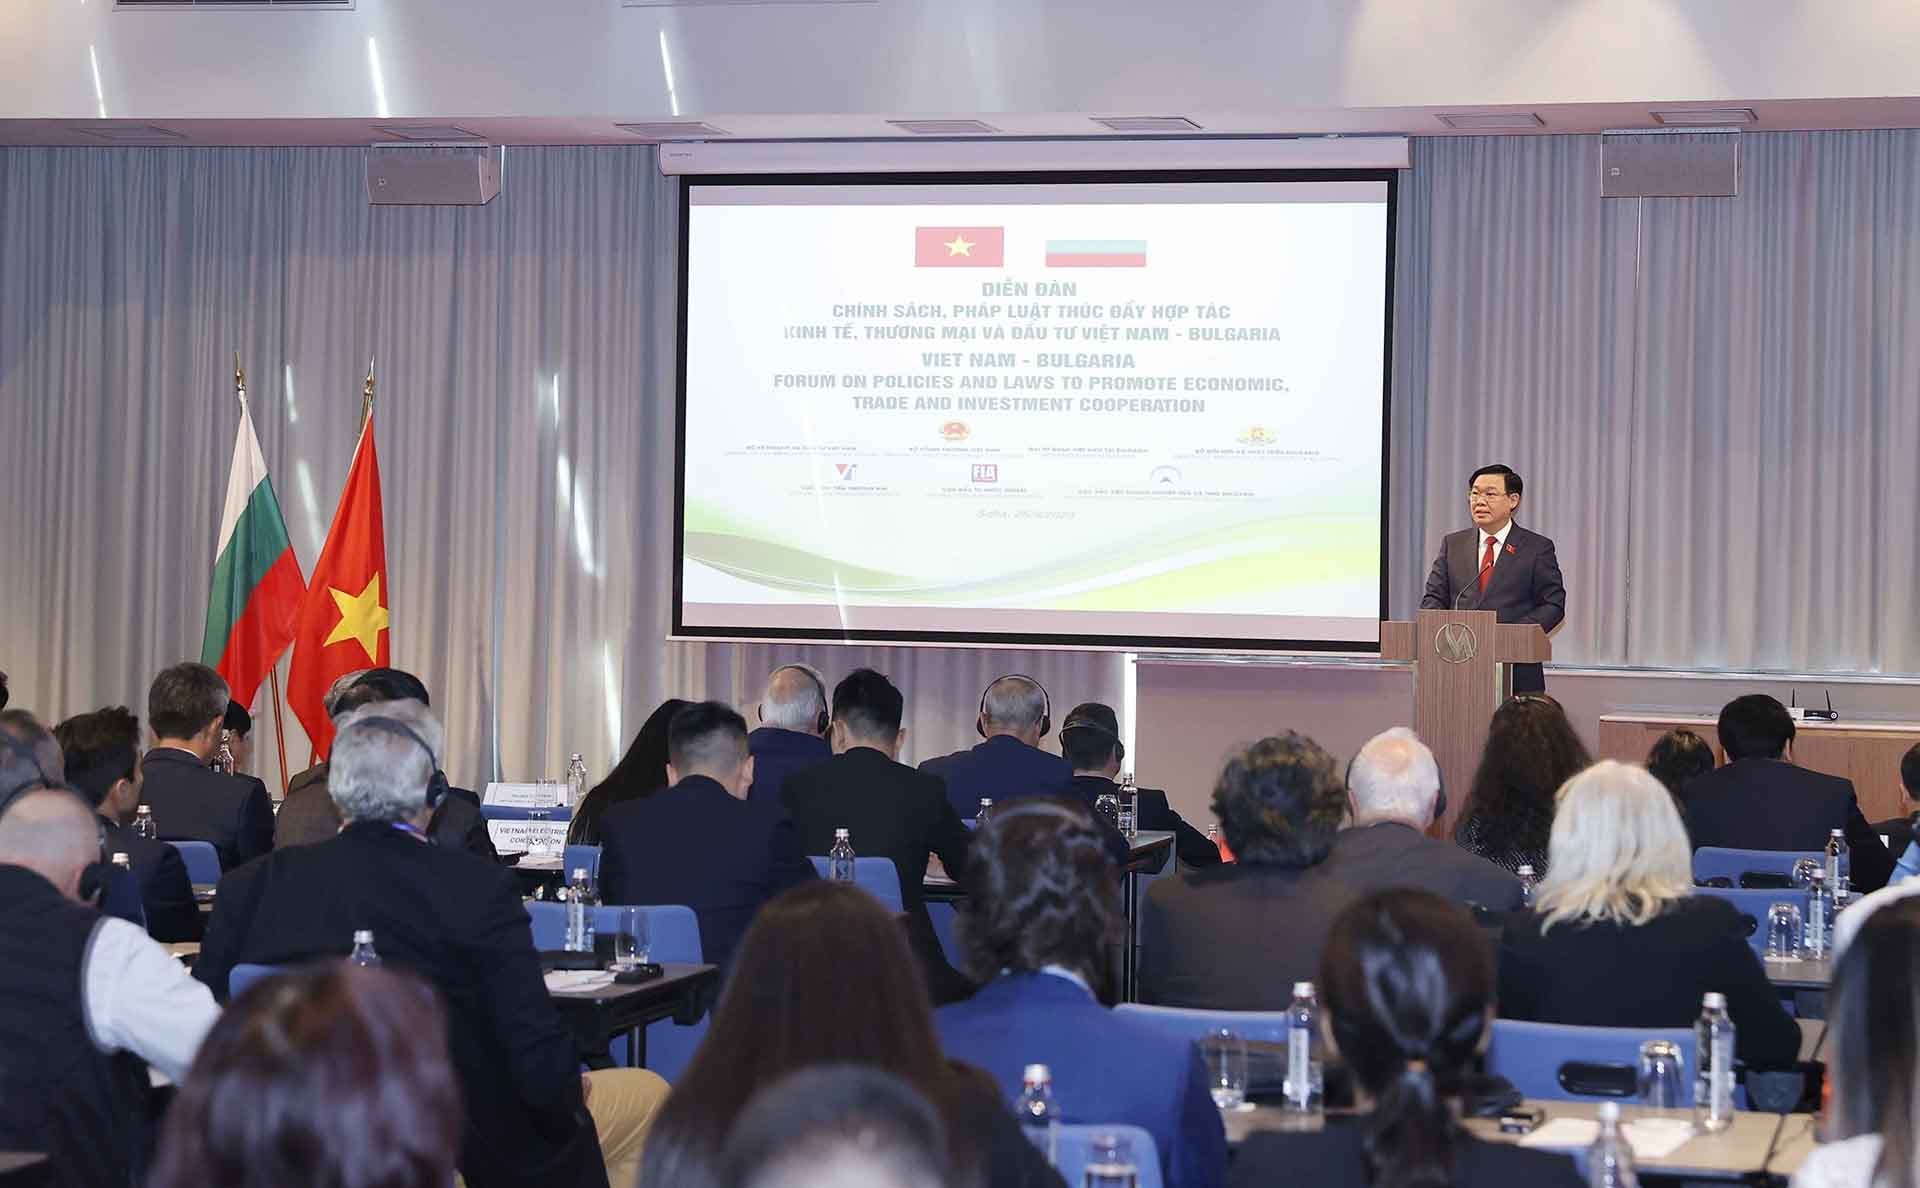 Diễn đàn chính sách, pháp luật về thúc đẩy hợp tác Việt Nam-Bulgaria